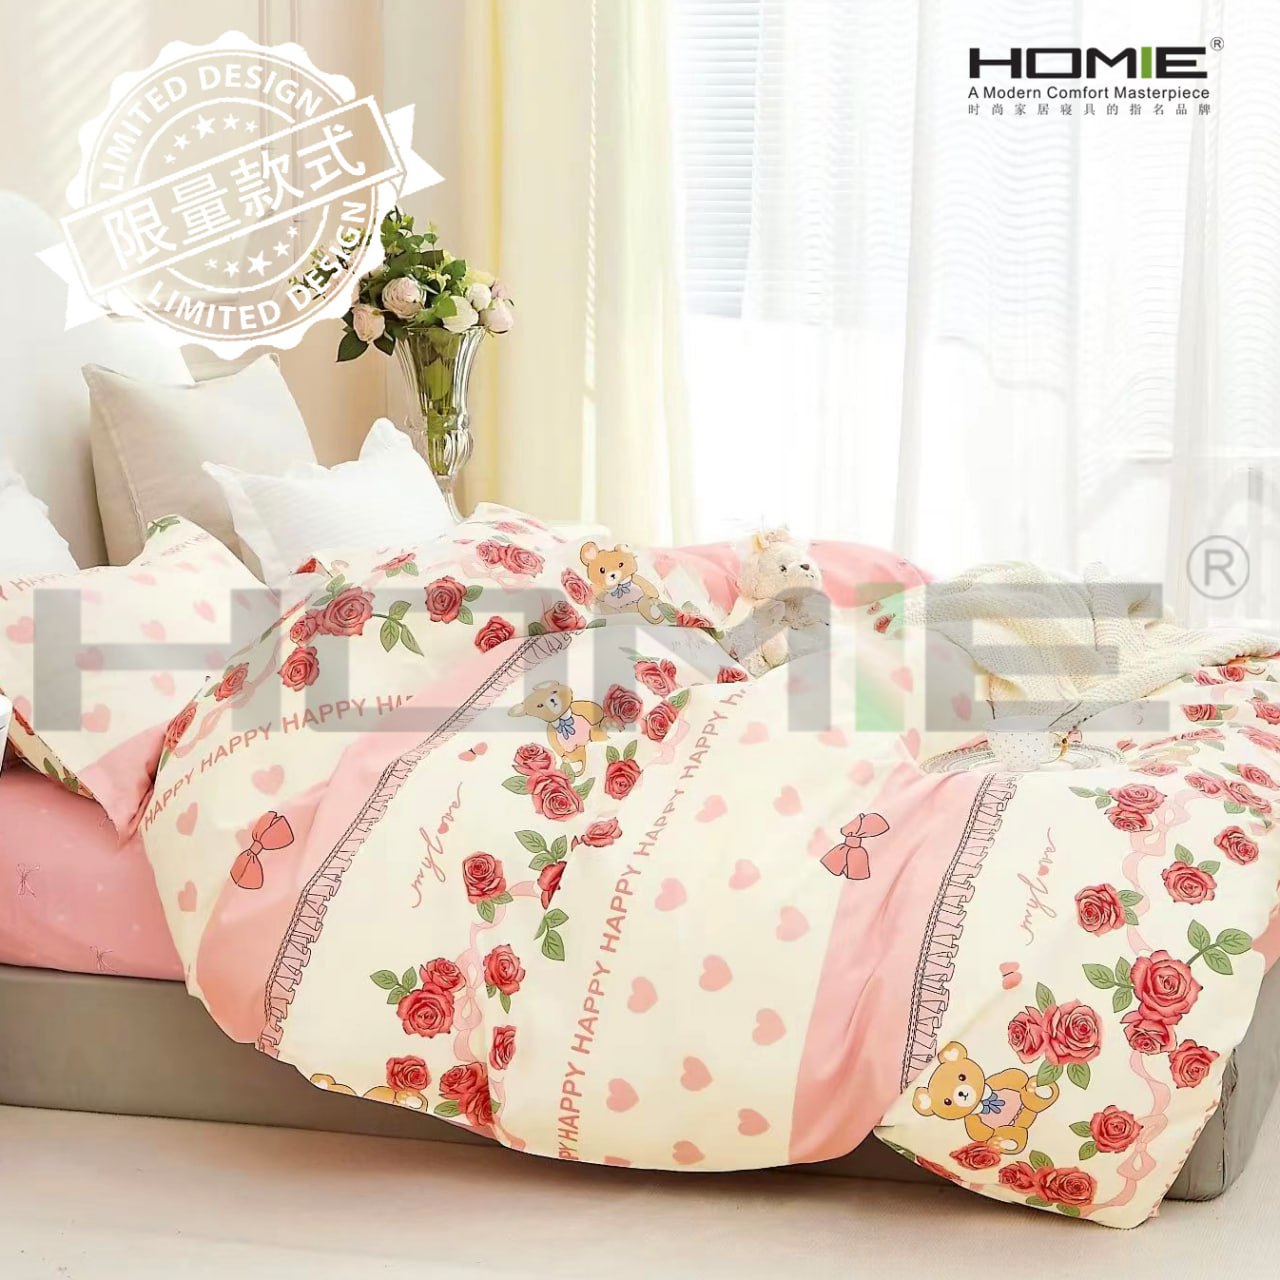 HOMIE Authentic 100% Cotton King Bedding Set